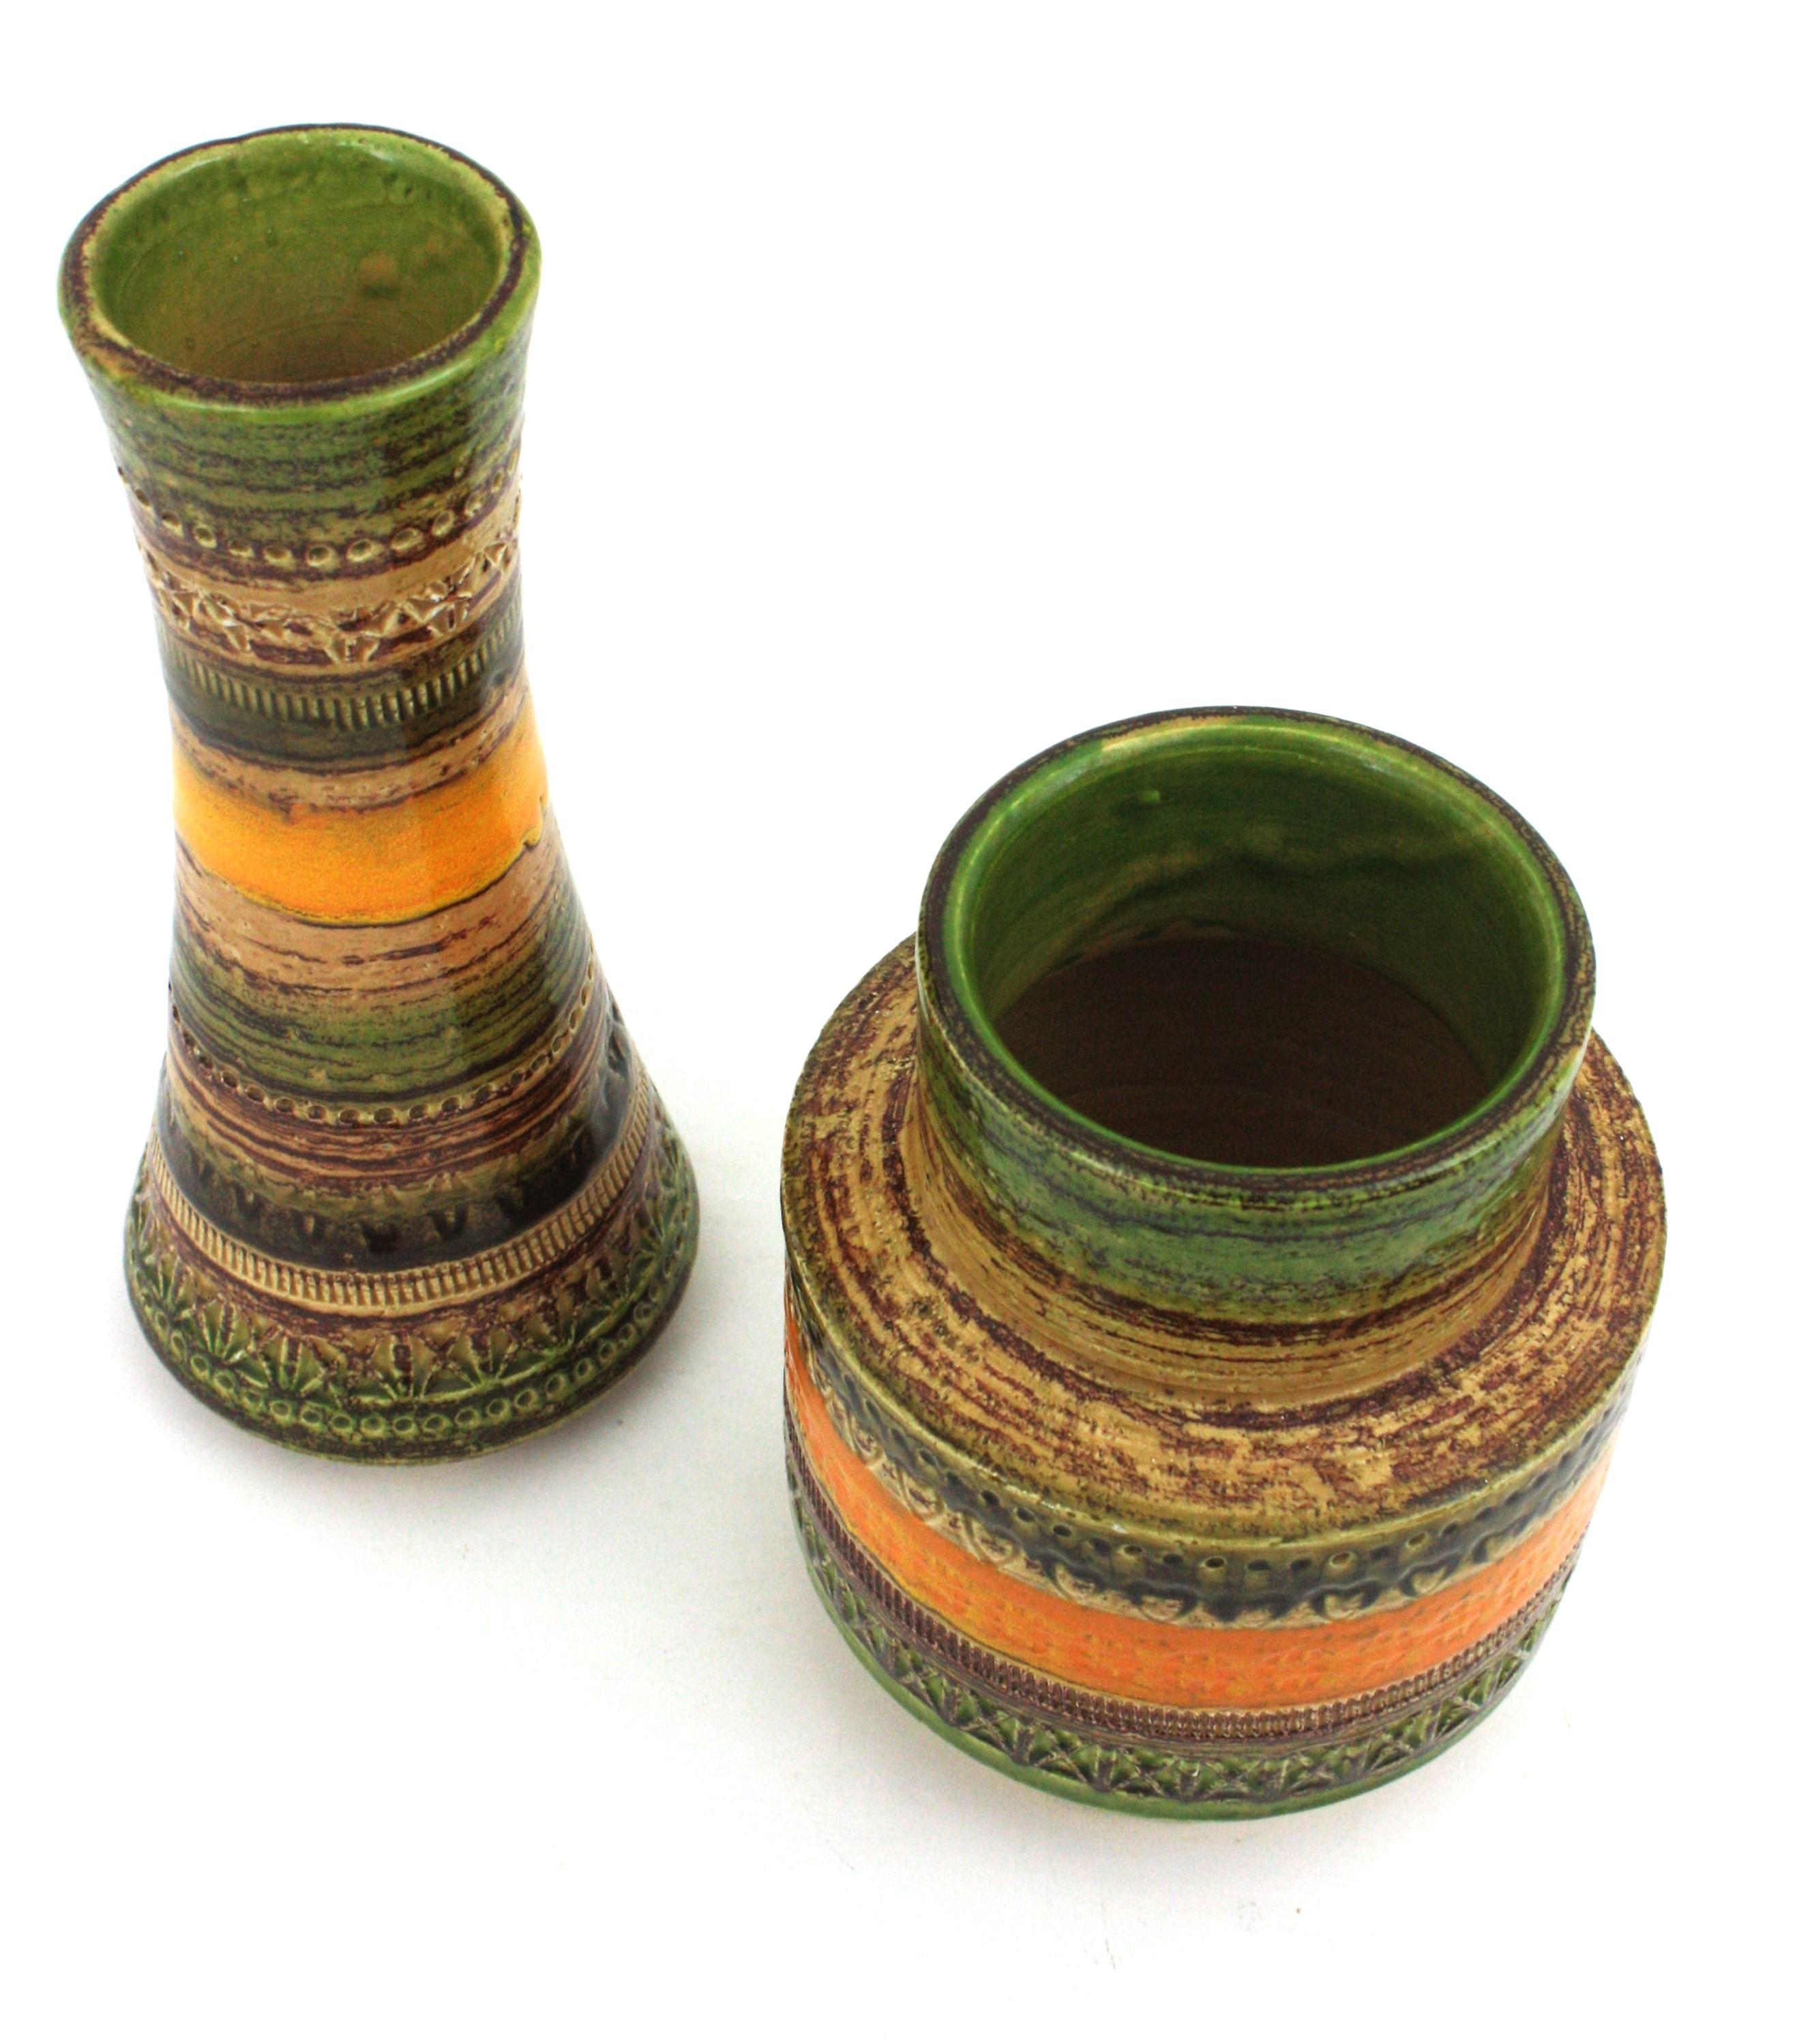 Bitossi Sahara Aldo Londi Cer Paoli Glazed Ceramic Vases, Italy, 1960s For Sale 4